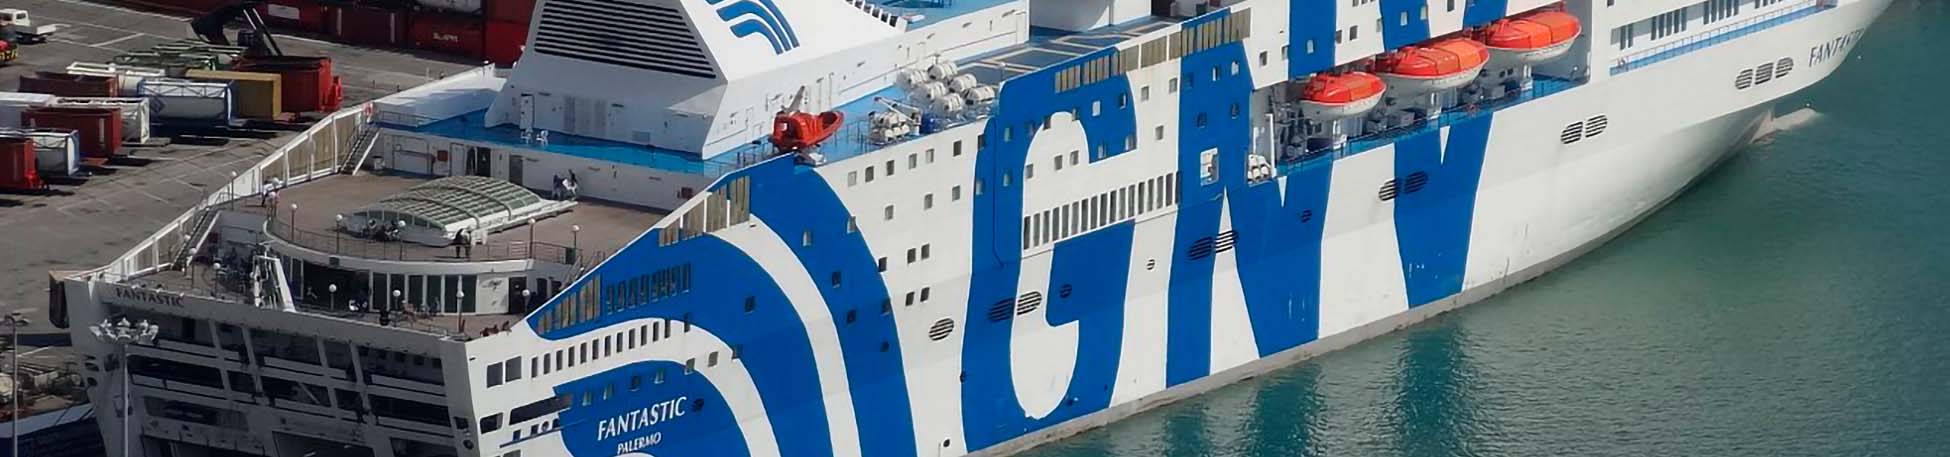 Immagine del porto di arrivo Tangeri Med per la rotta traghetto Genova - Tangeri Med